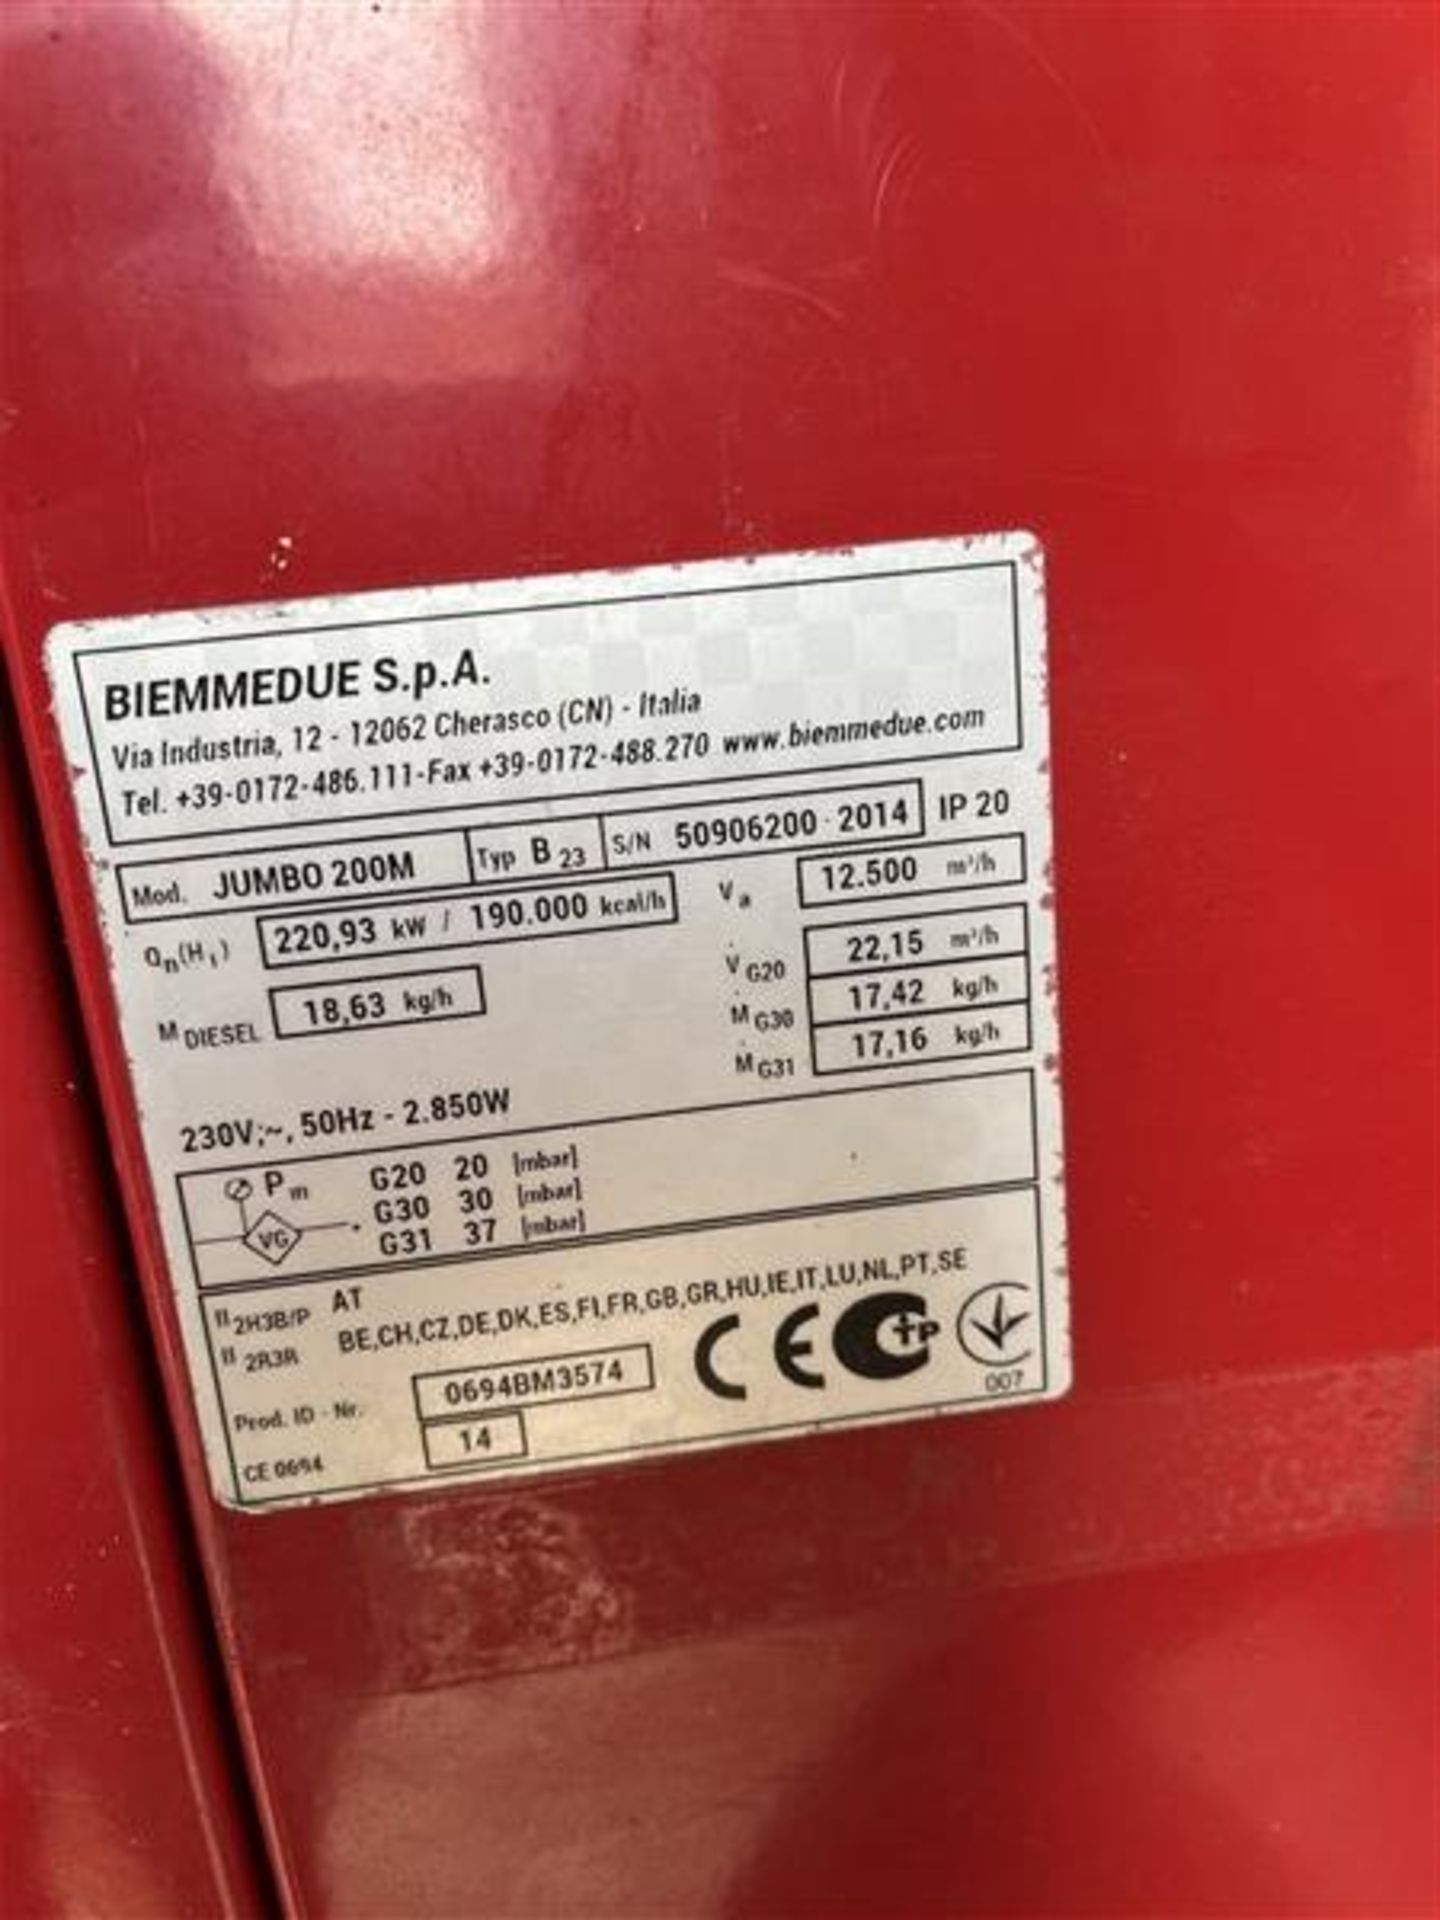 Biemmedue SPA Jumbo 200m Mobile Heater (2014) - Image 3 of 6